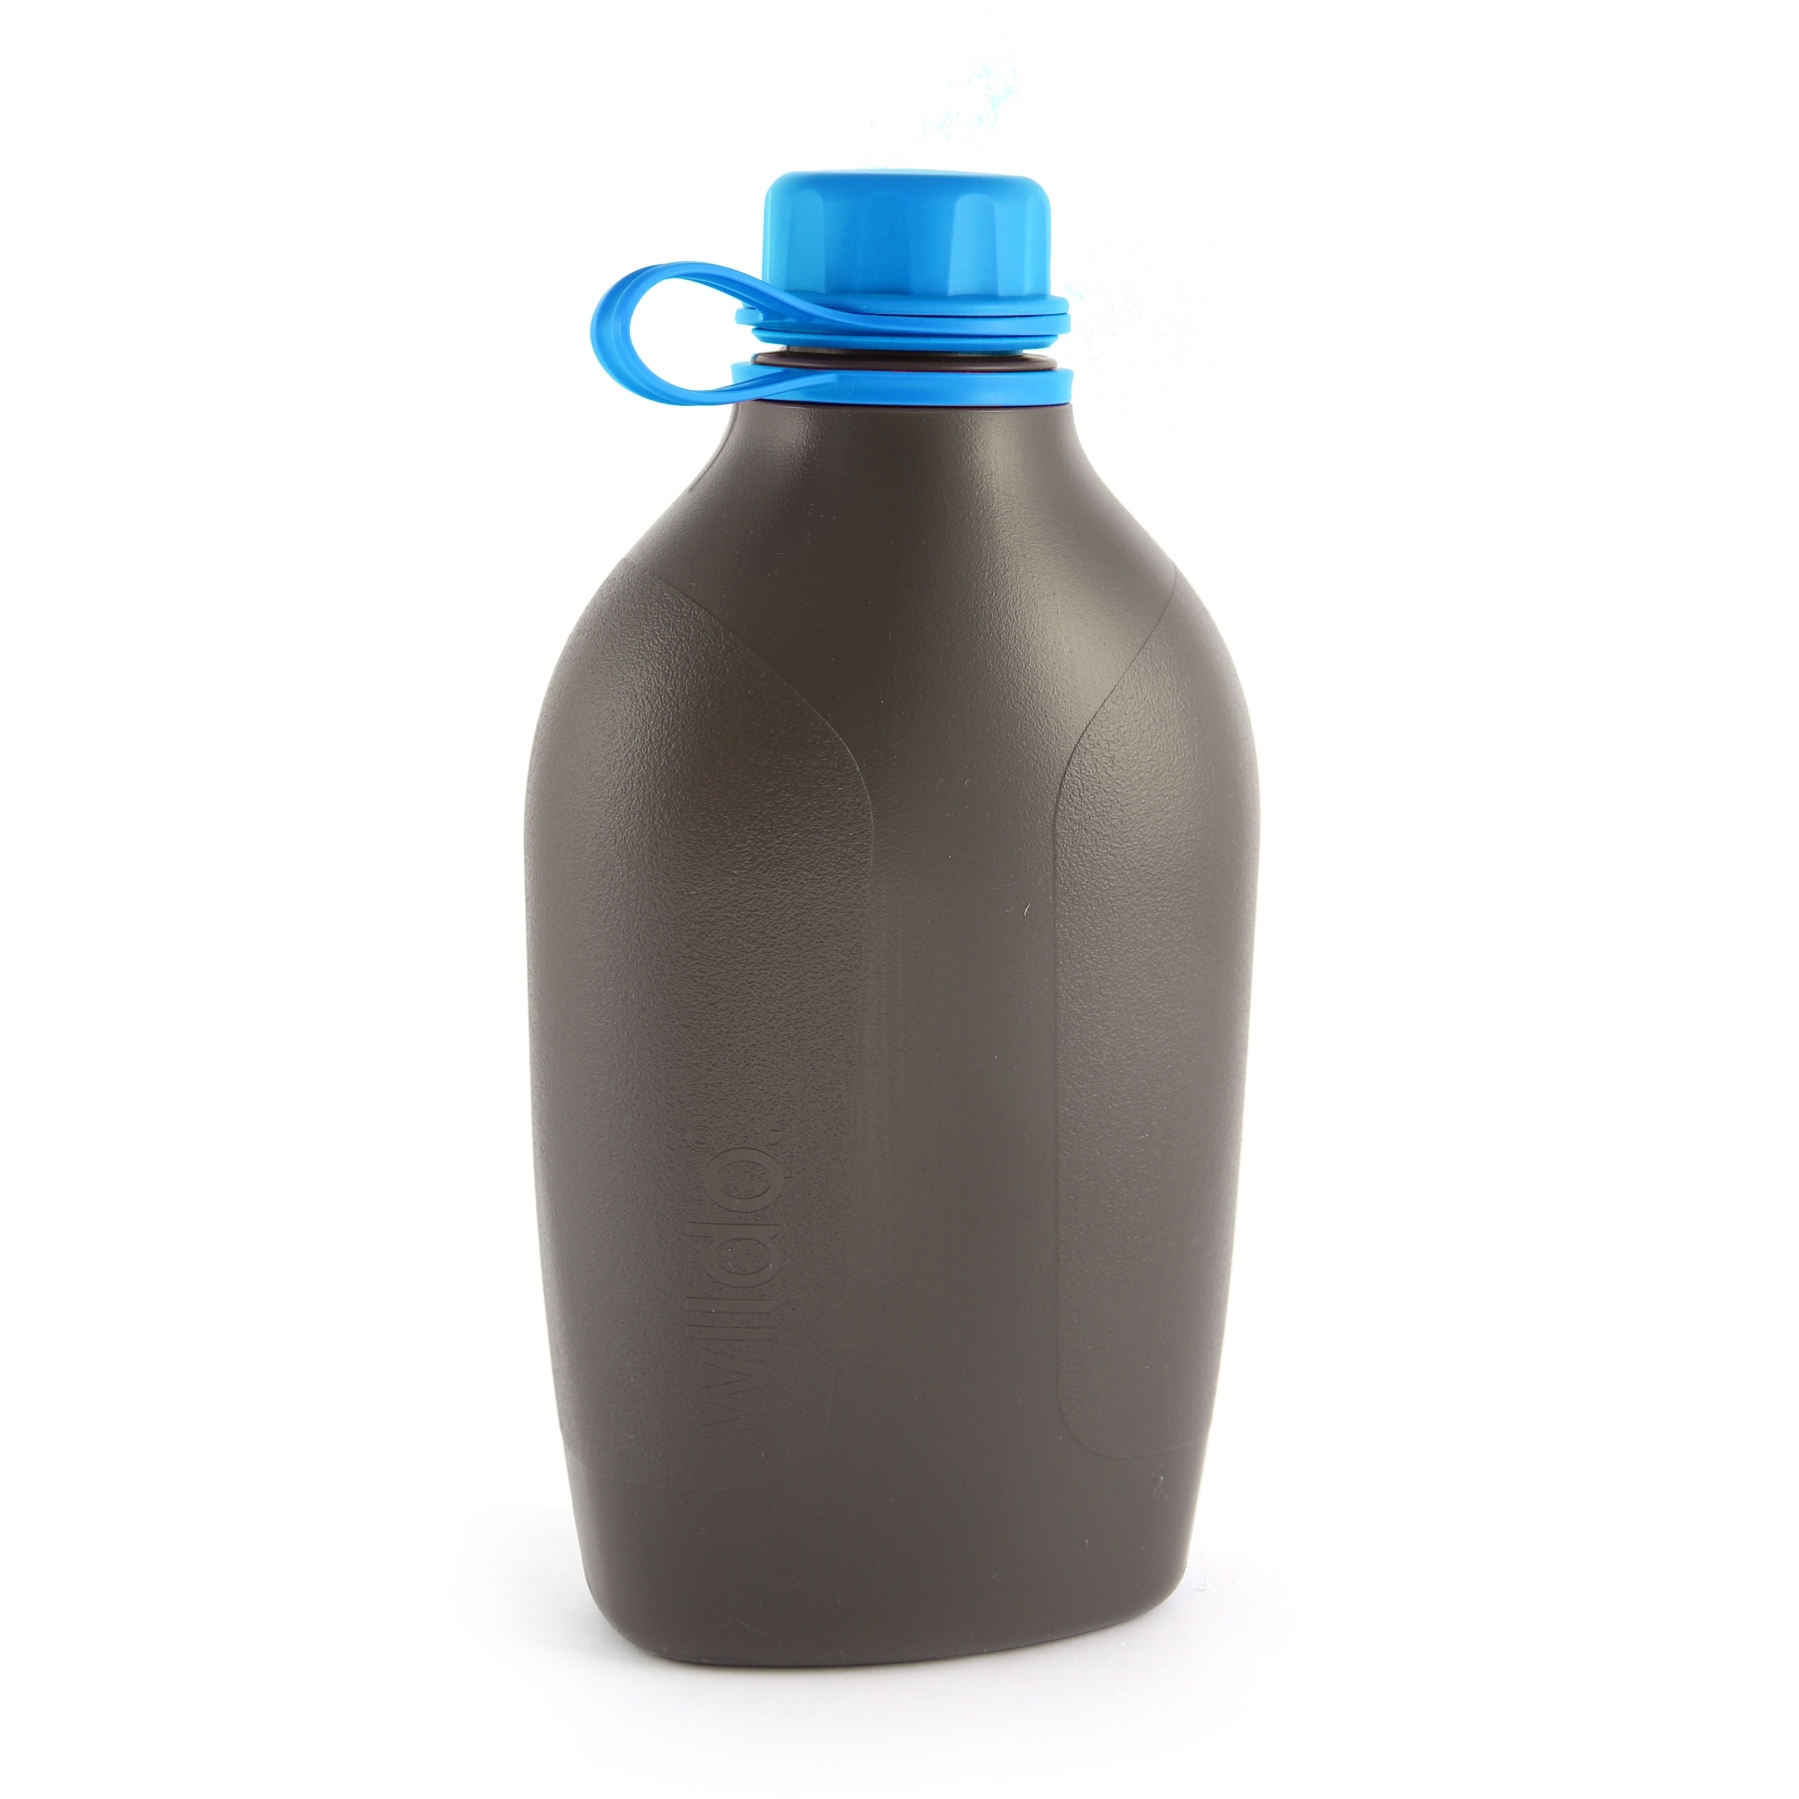 Produktbild von Wildo Explorer Bottle 1L - Trinkflasche - light blue